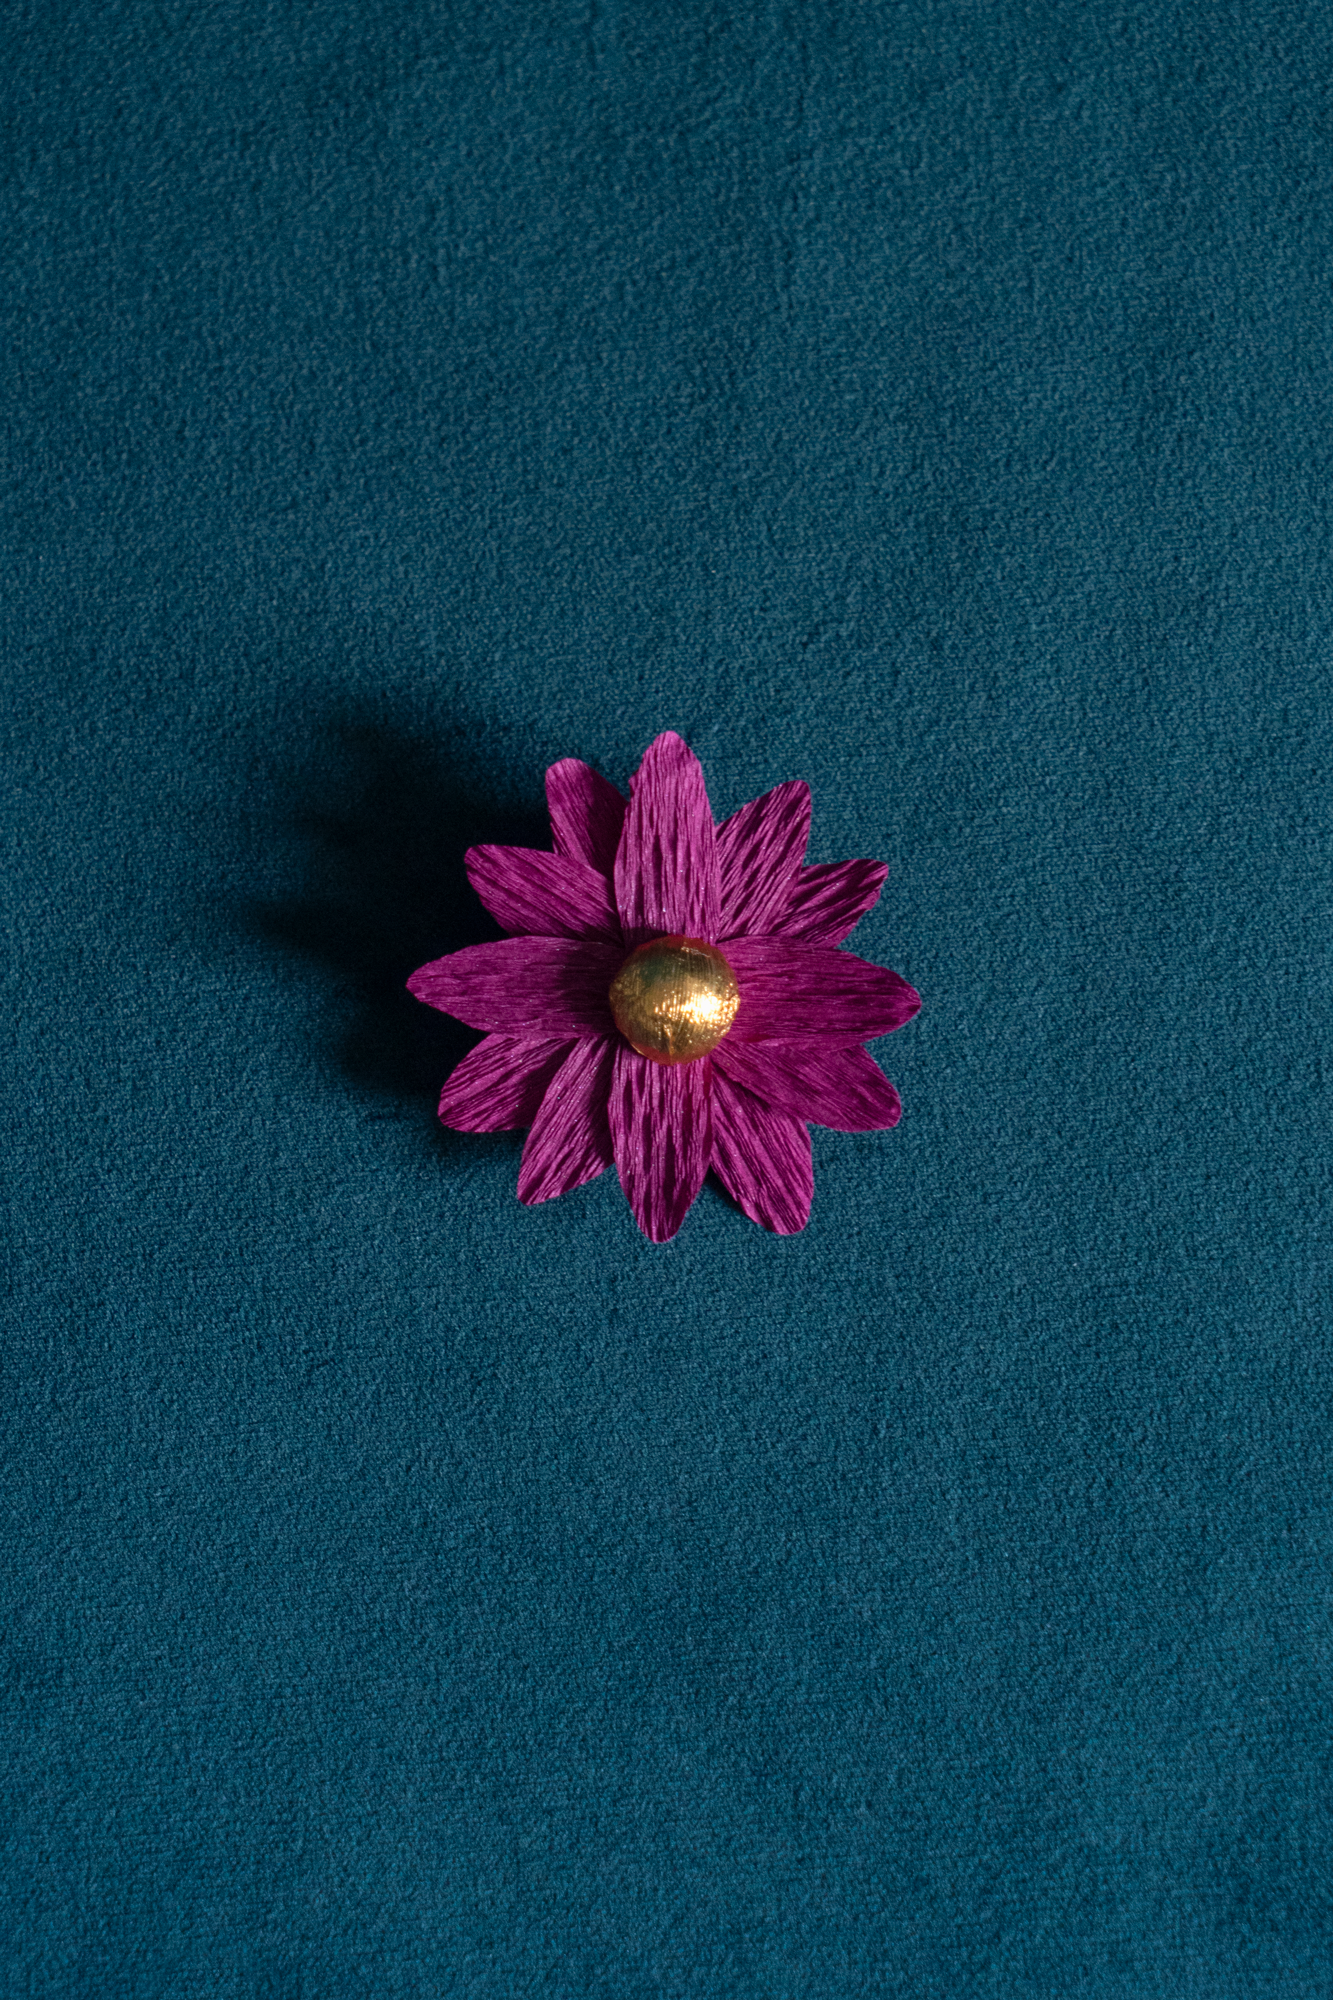 Broche Marguerite de Maison Tessier couleur Grenat coeur Or, sur tissus velour émeraude